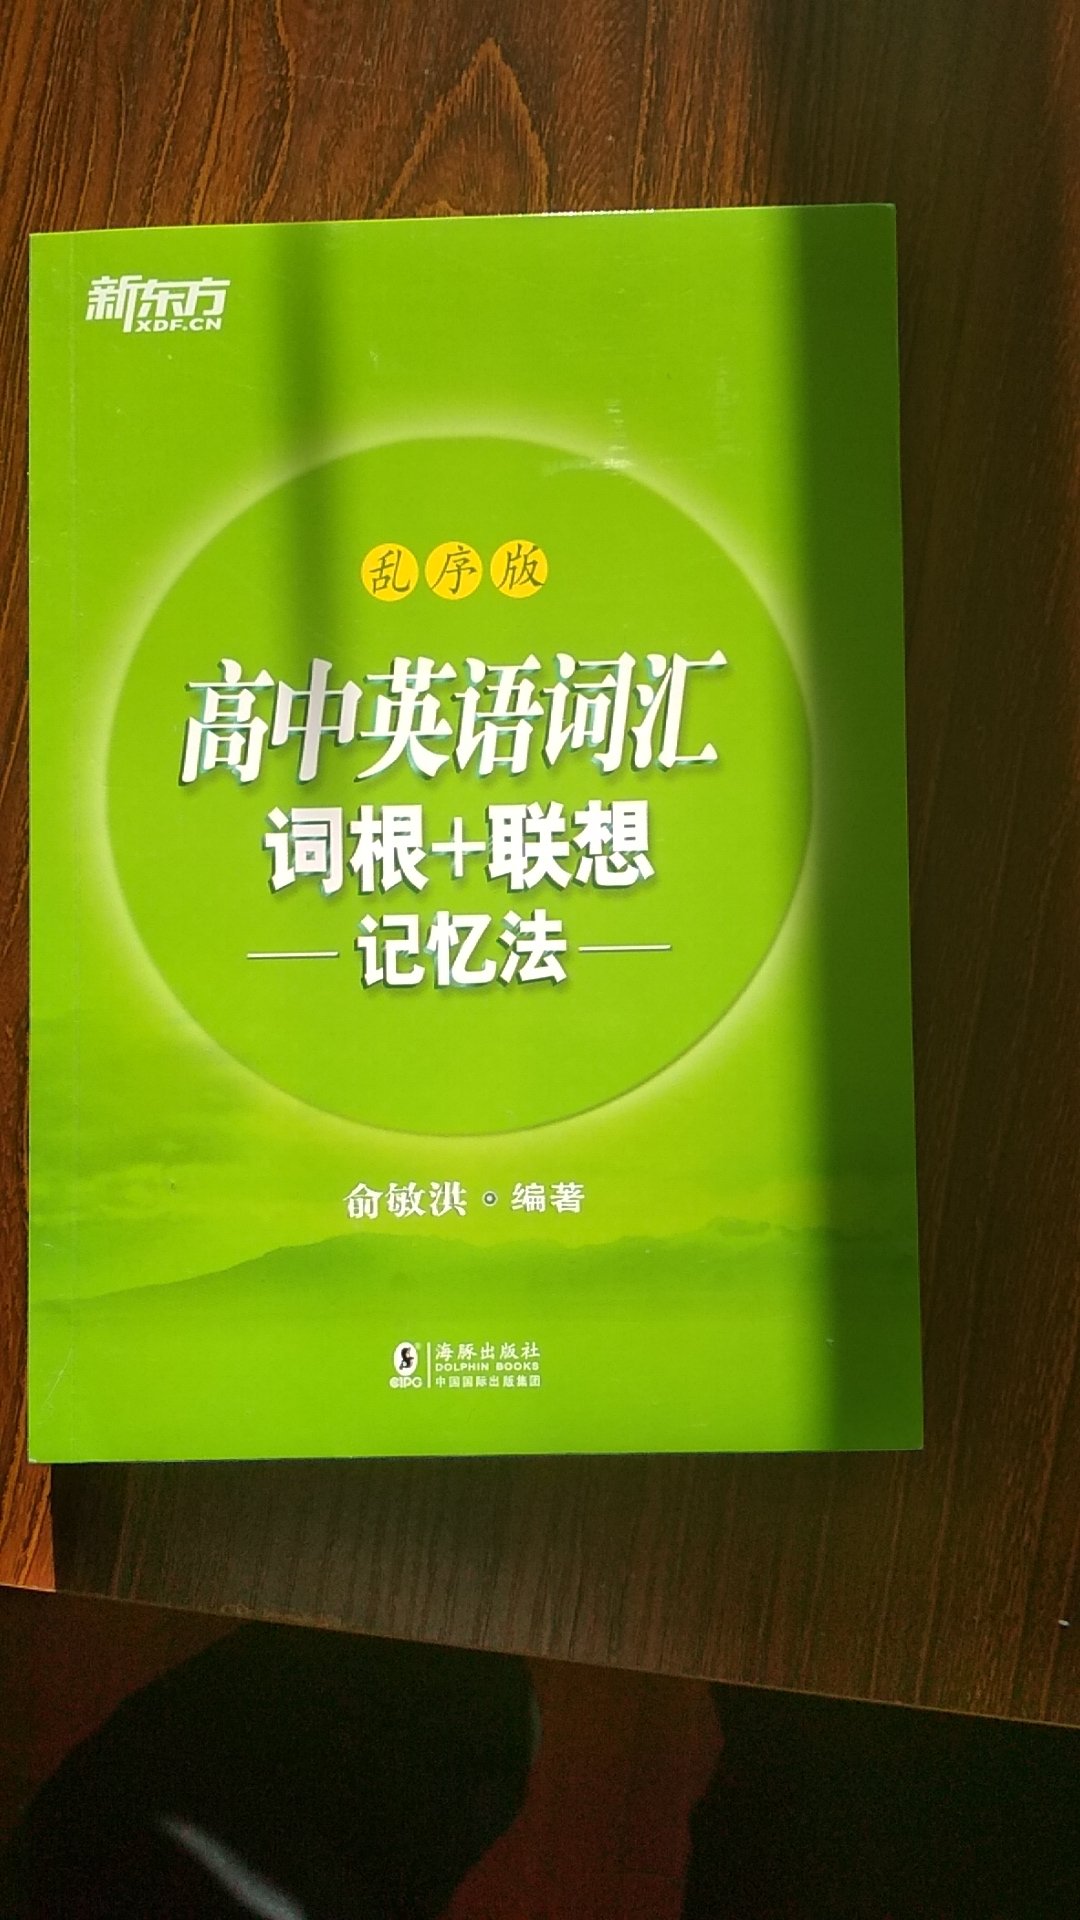 俞洪敏的书值得一看。学好高中英语很重要。